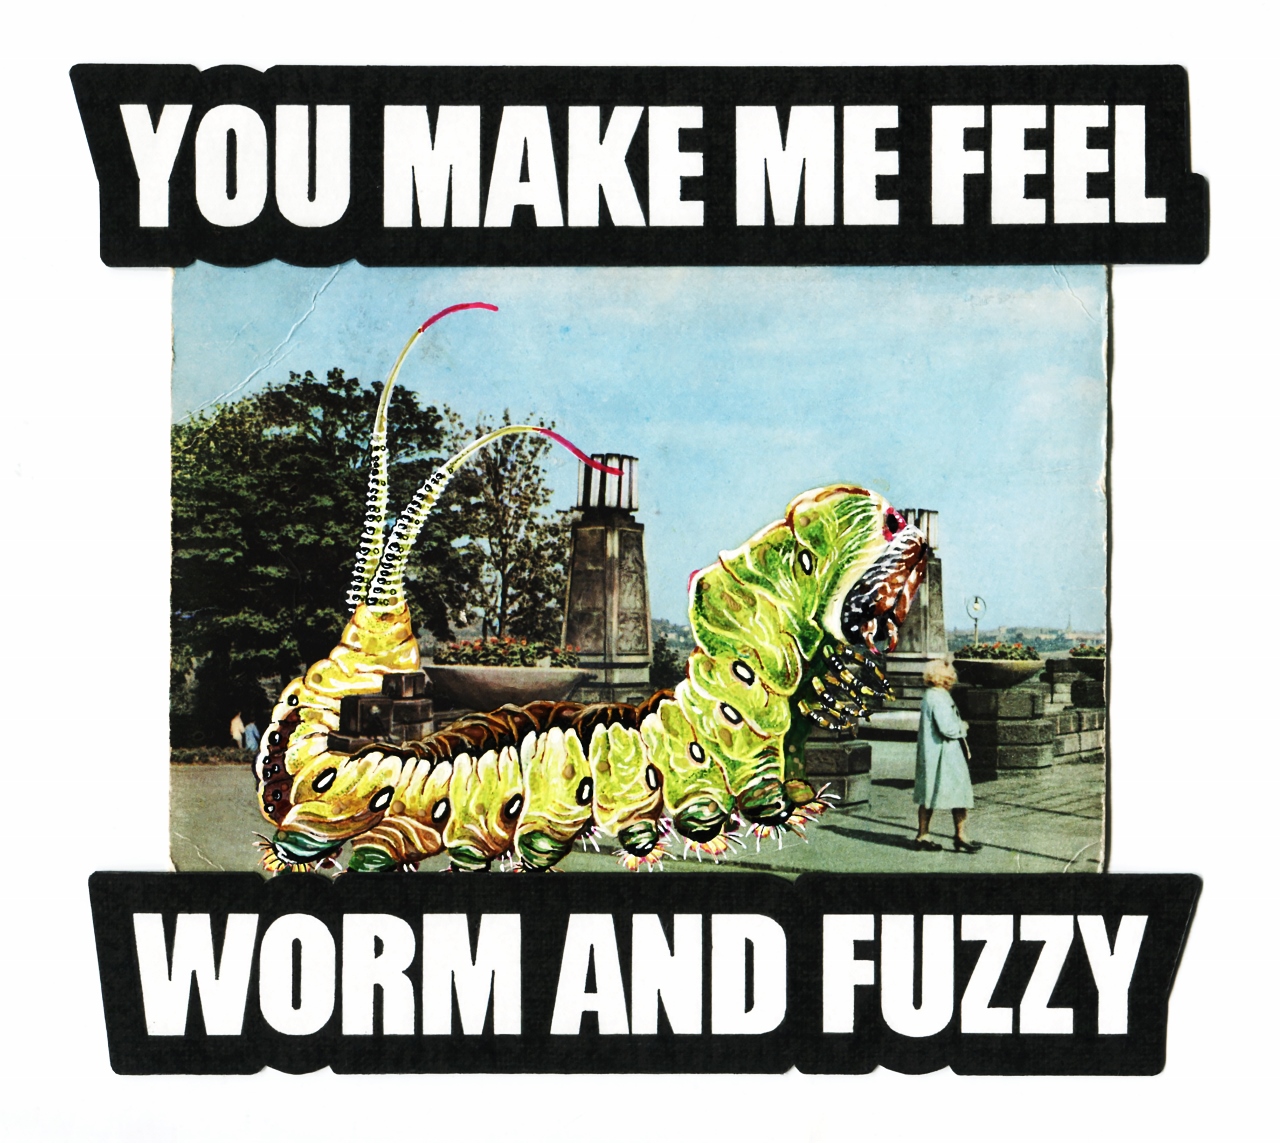 Paweł Zawiślak „You make me feel worm and fuzzy” (źródło: materiały prasowe organizatora)